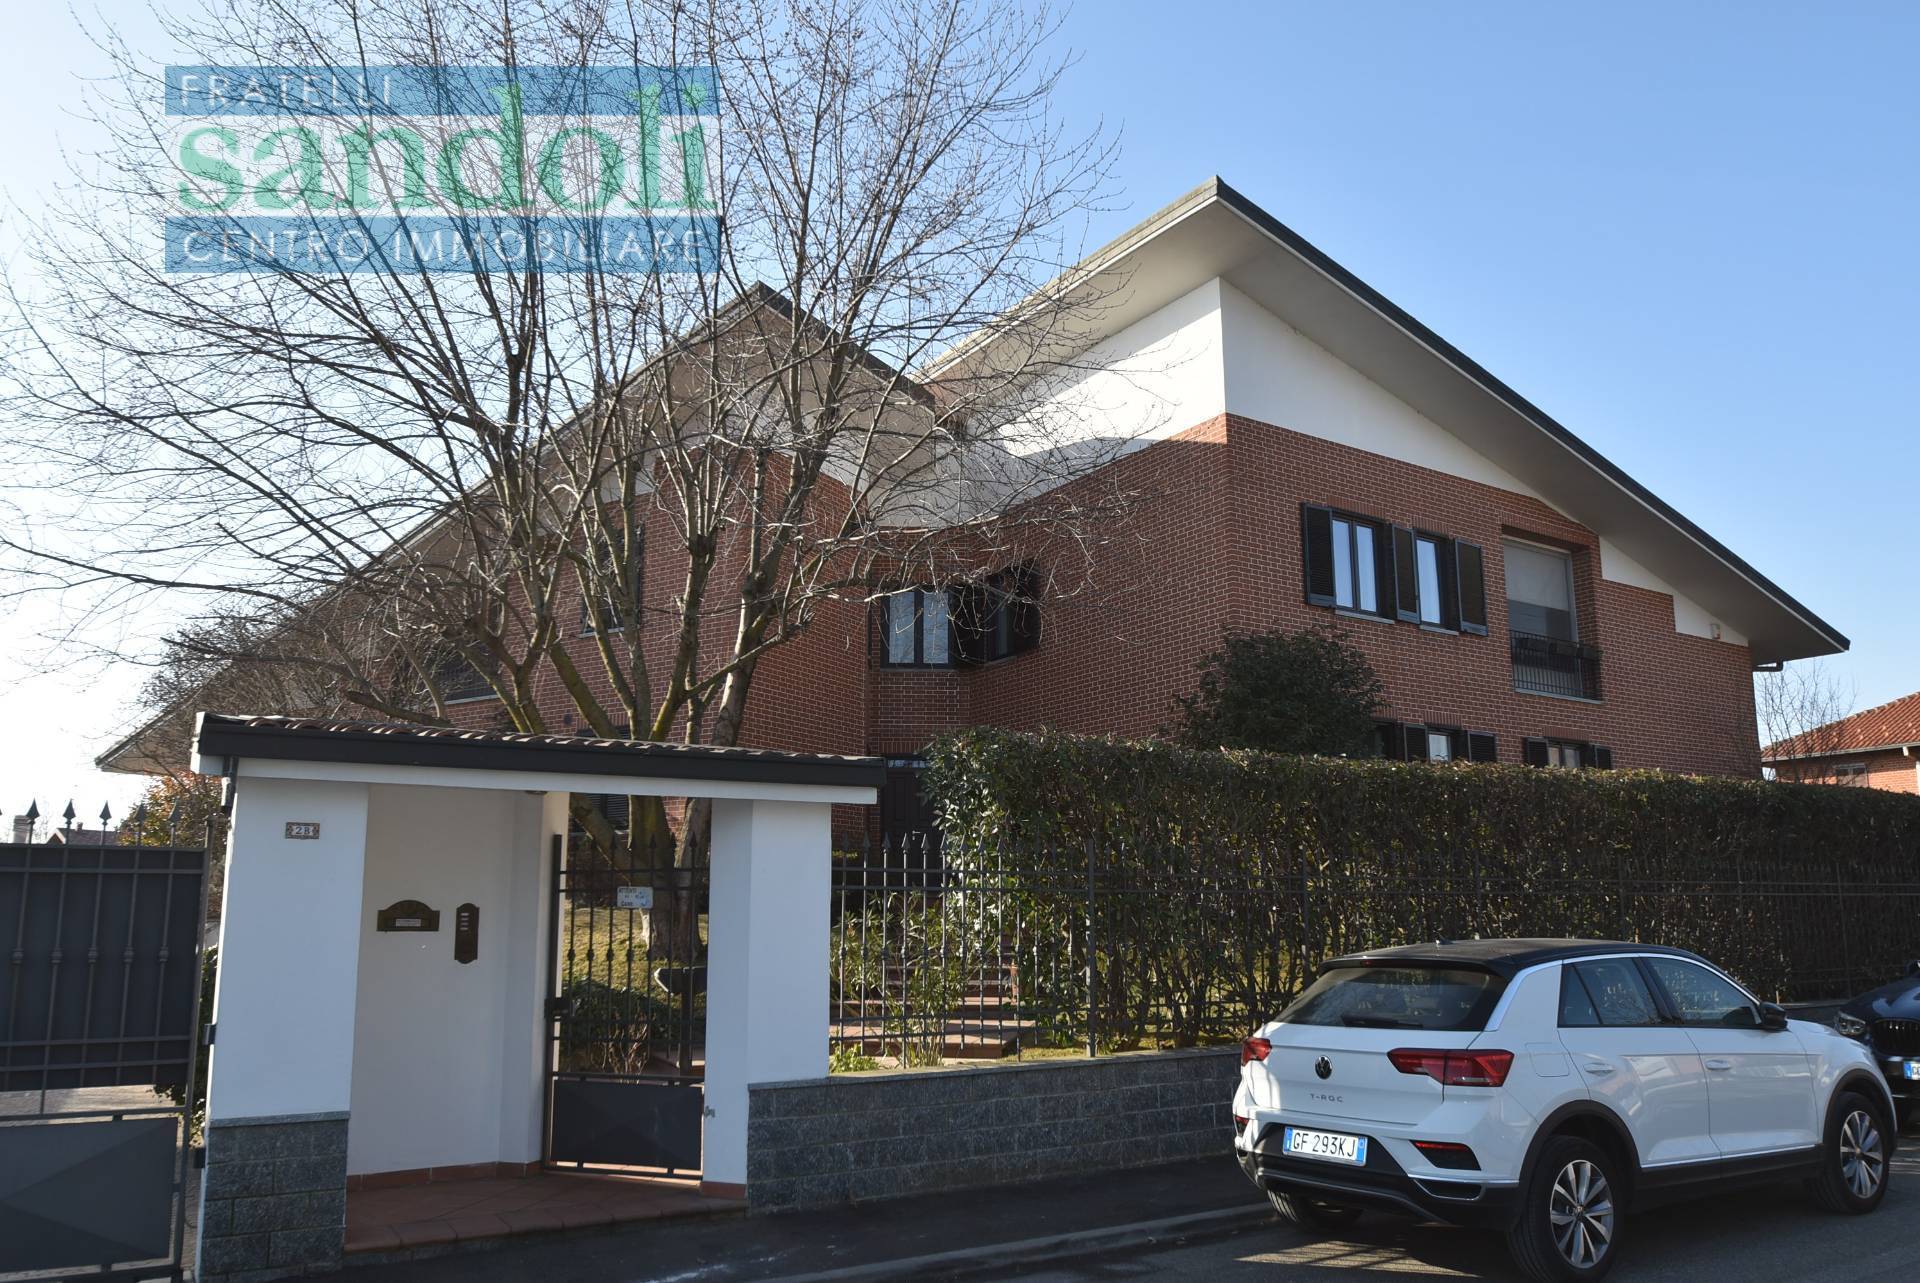 Appartamento in vendita a Caresanablot, 4 locali, zona Località: Paesi, prezzo € 230.000 | PortaleAgenzieImmobiliari.it